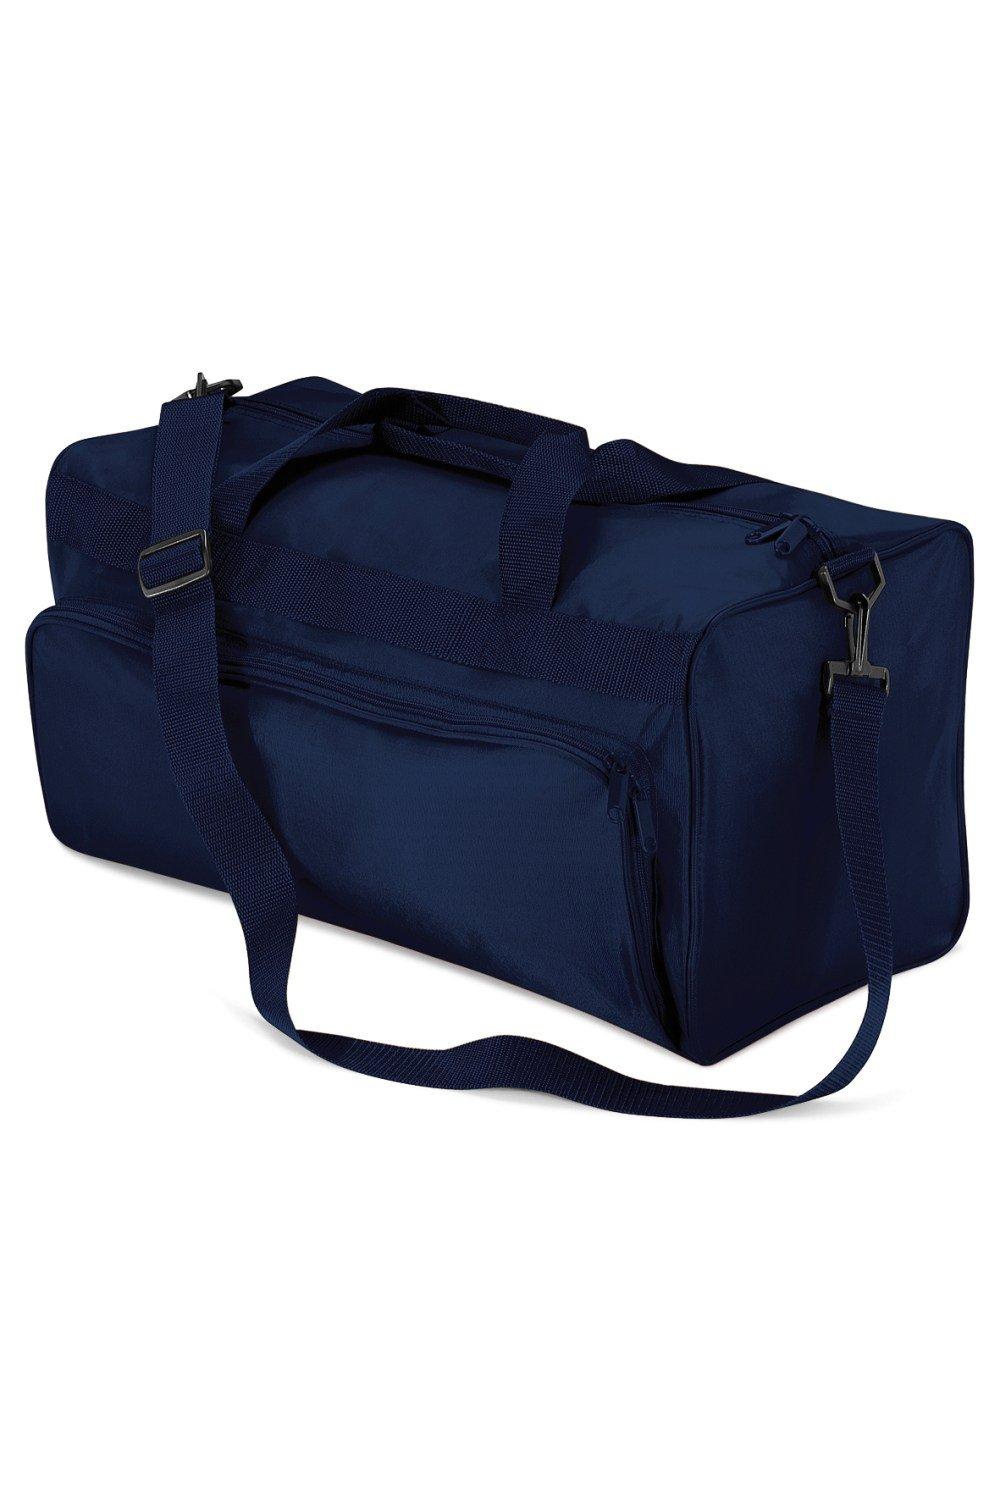 Дорожная сумка Duffle Holdall (34 литра) Quadra, темно-синий